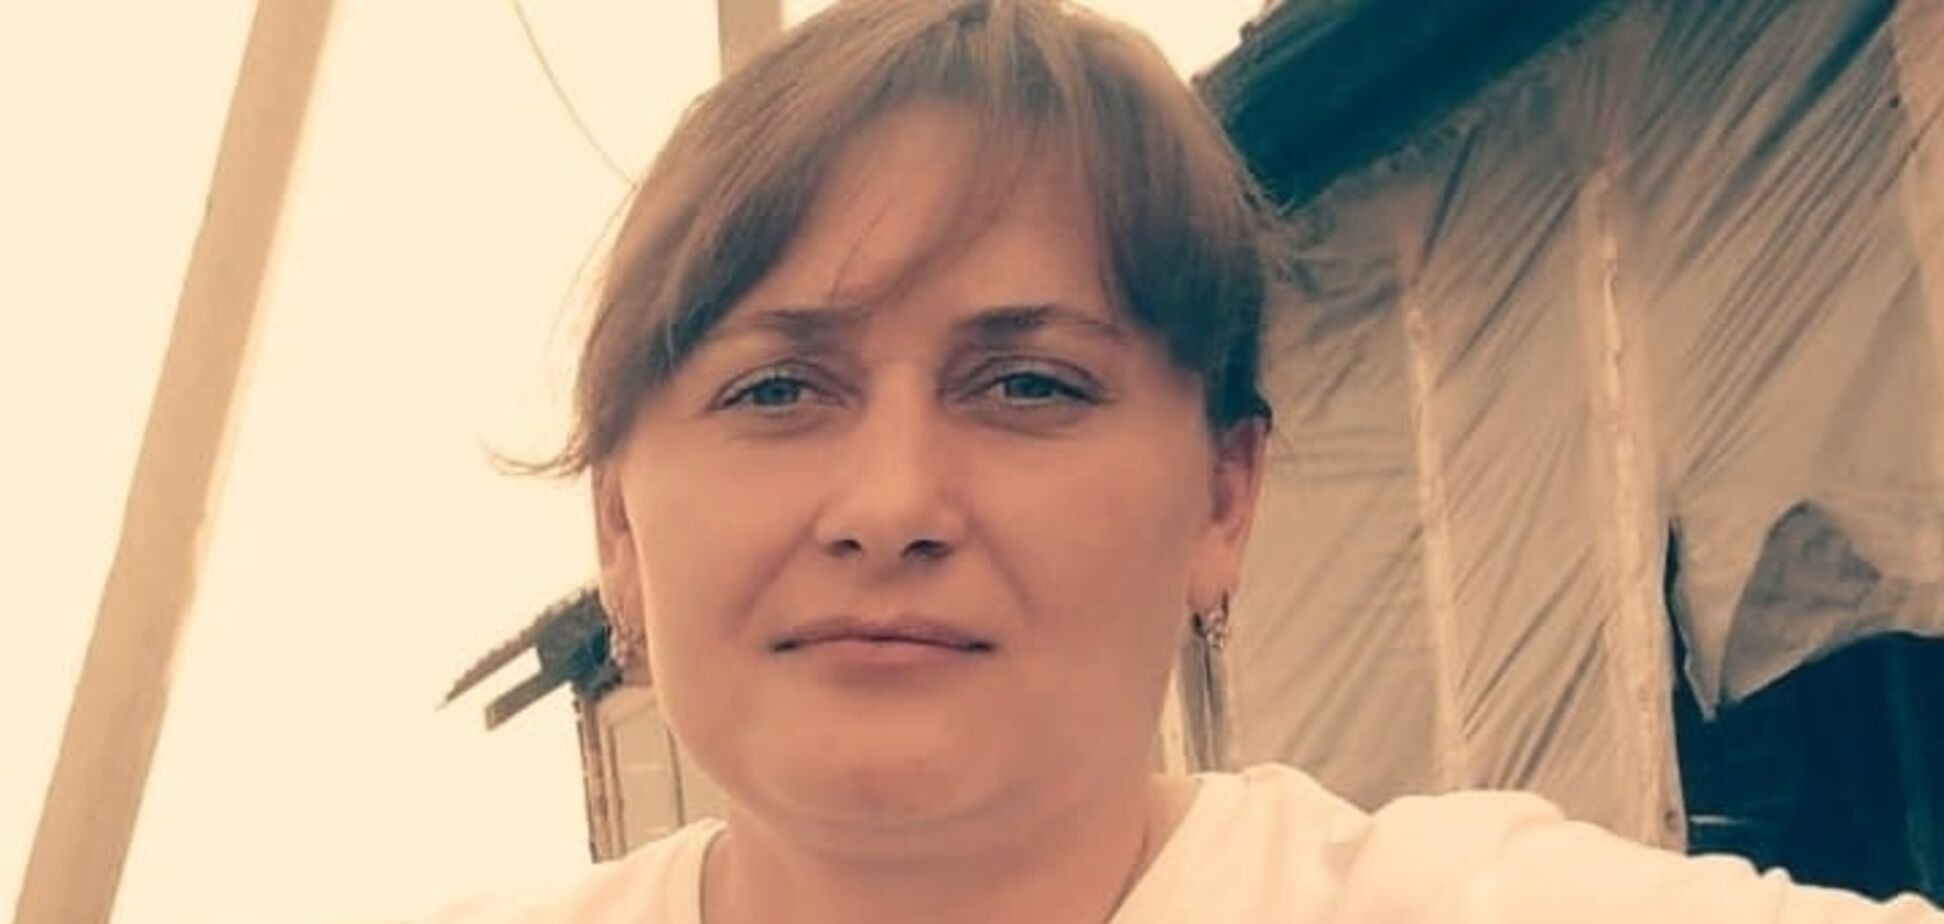 Снайпер бачив жінку, але натиснув на гачок: з'явилися деталі смерті захисниці України